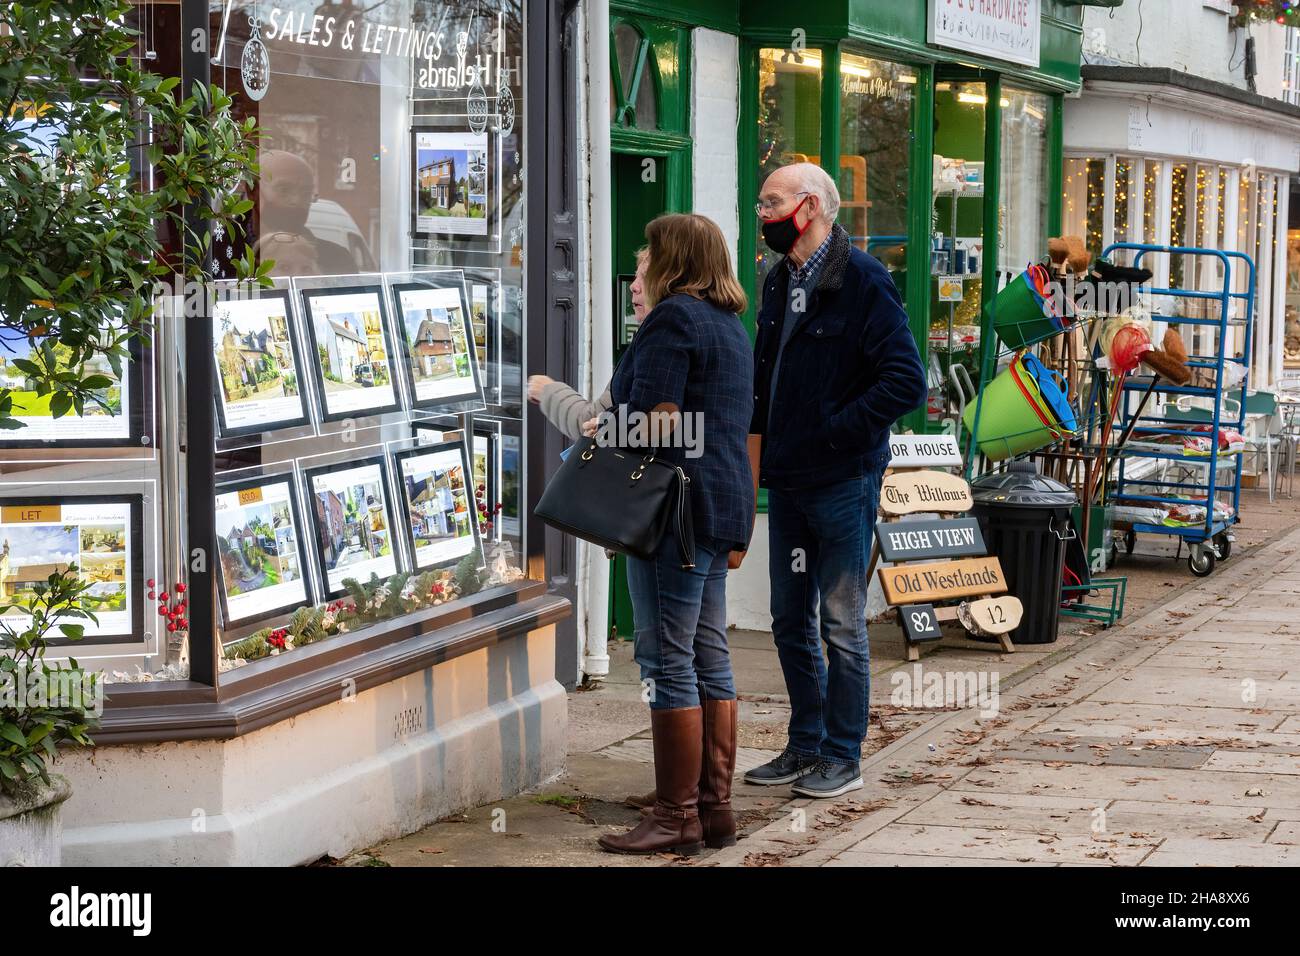 Personnes regardant les détails de la propriété dans une fenêtre de magasin d'agents immobiliers, Hampshire, Angleterre, Royaume-Uni Banque D'Images